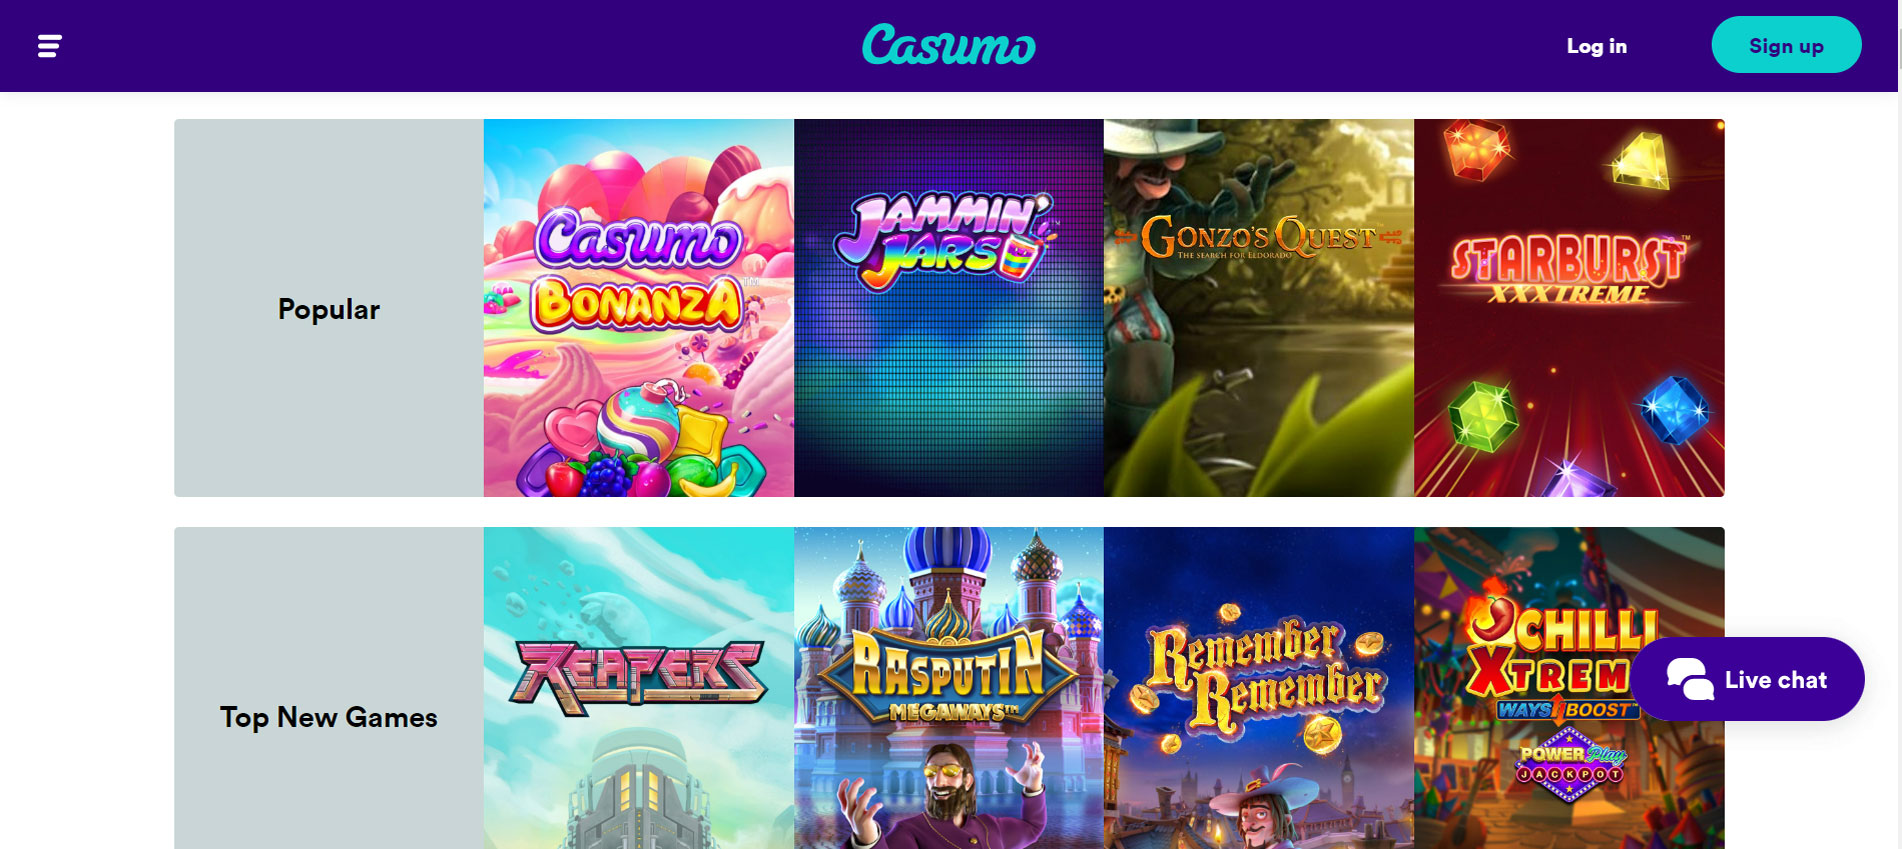 Casumo Casino Slots